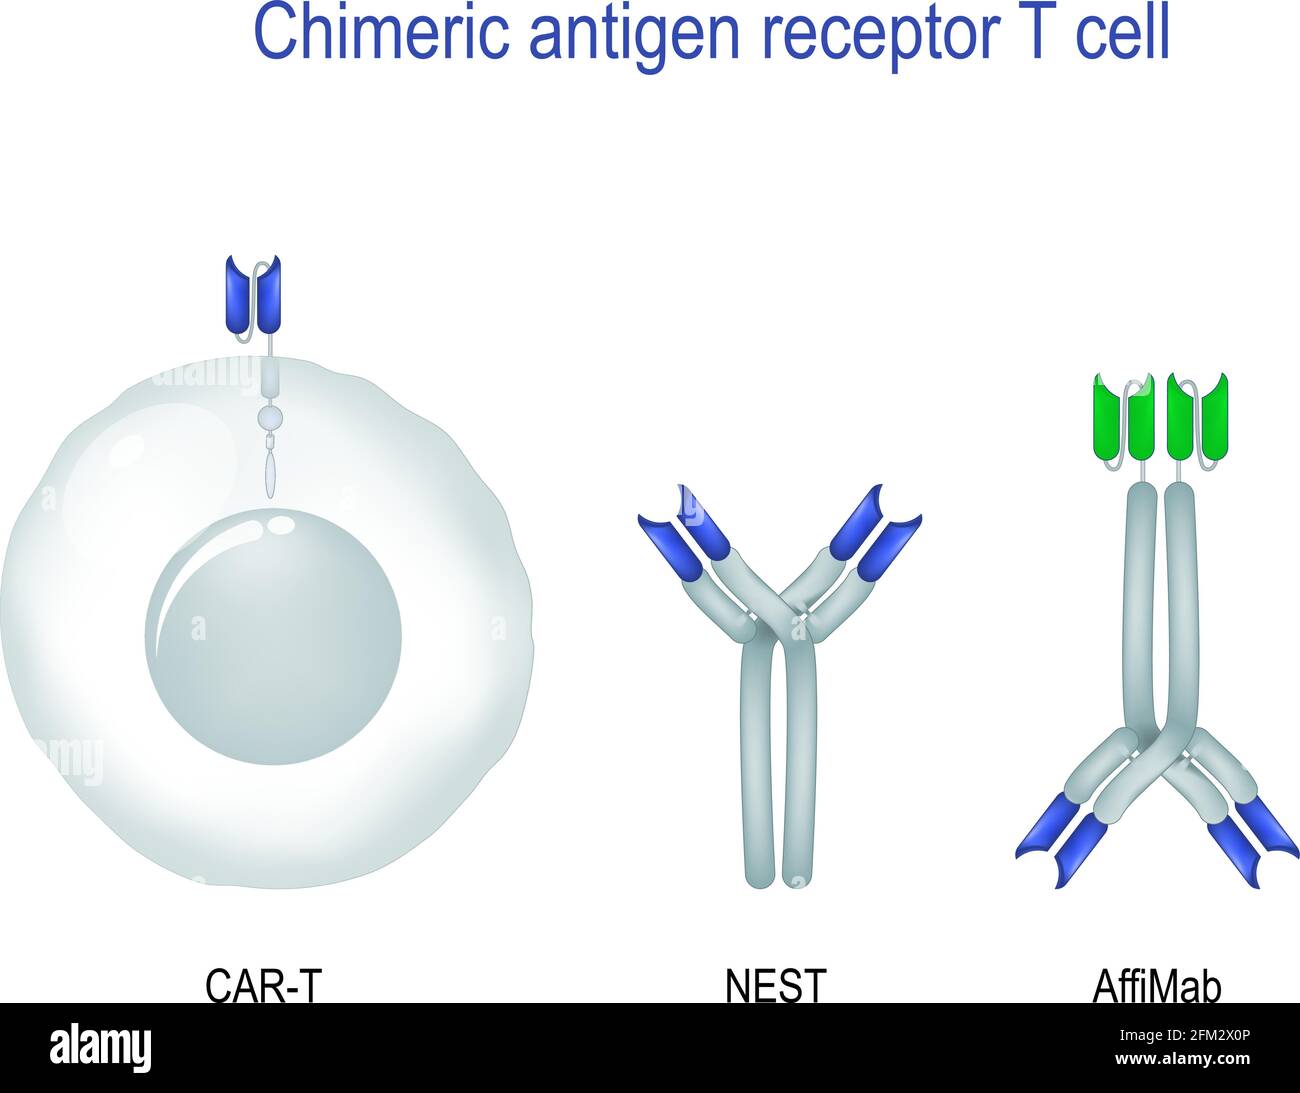 Cellule T du récepteur de l'antigène chimérique. Immunothérapie pour le cancer. Traitement du cancer. Équipé de CELLULES T DE VOITURE qui peuvent reconnaître et combattre la tumeur infectée Illustration de Vecteur